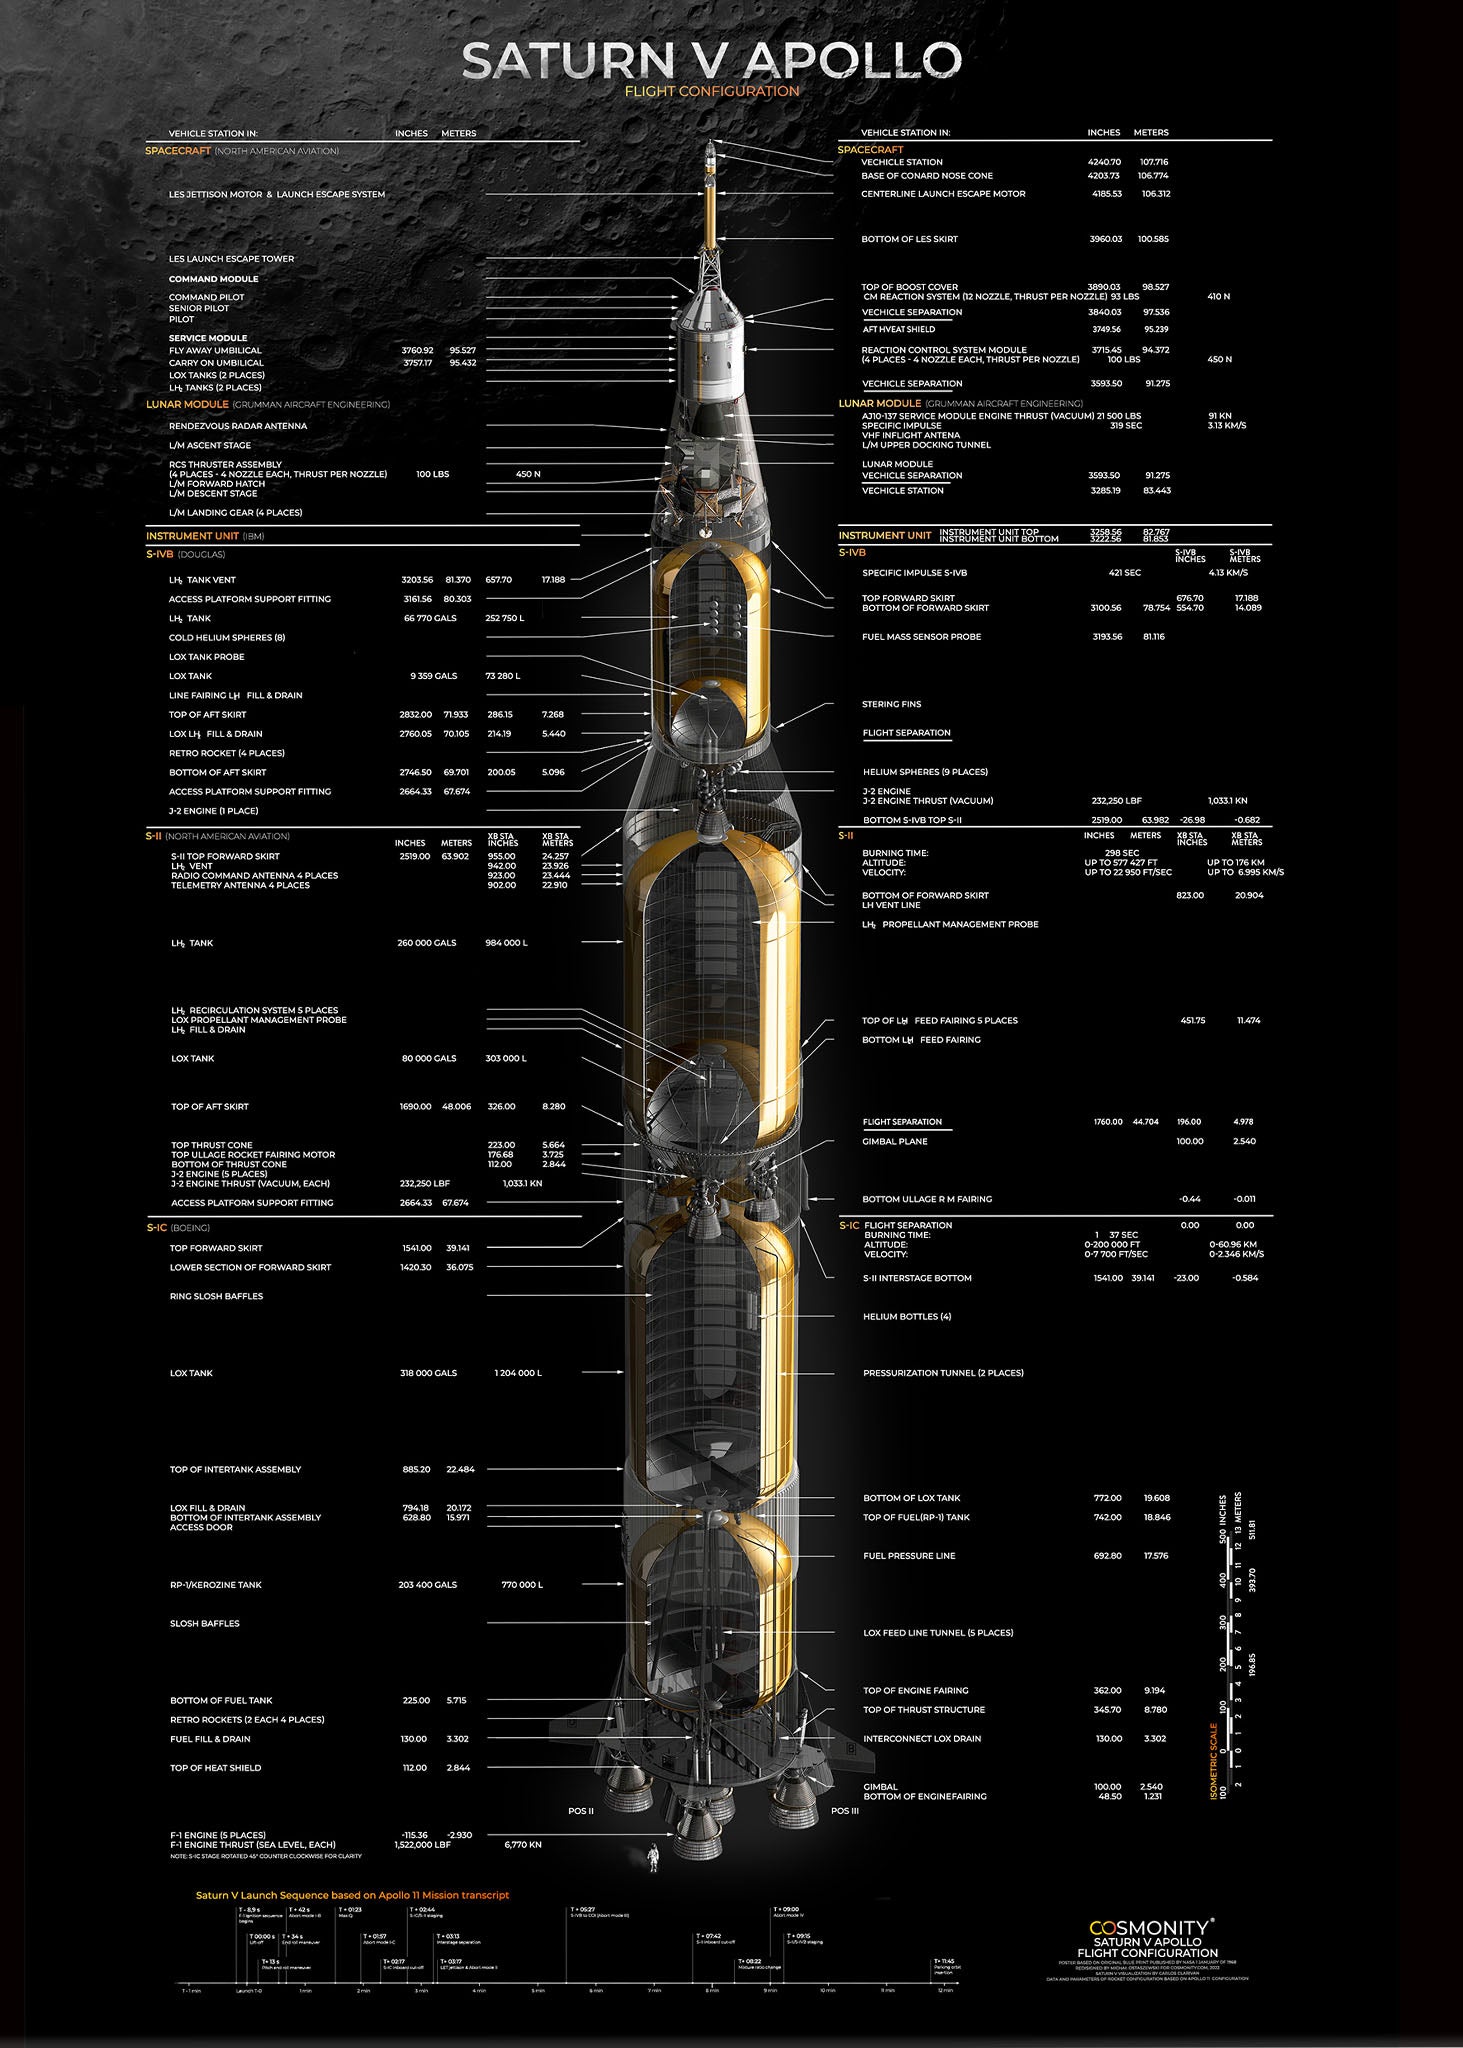 Saturn V Apollo Flight Configuration